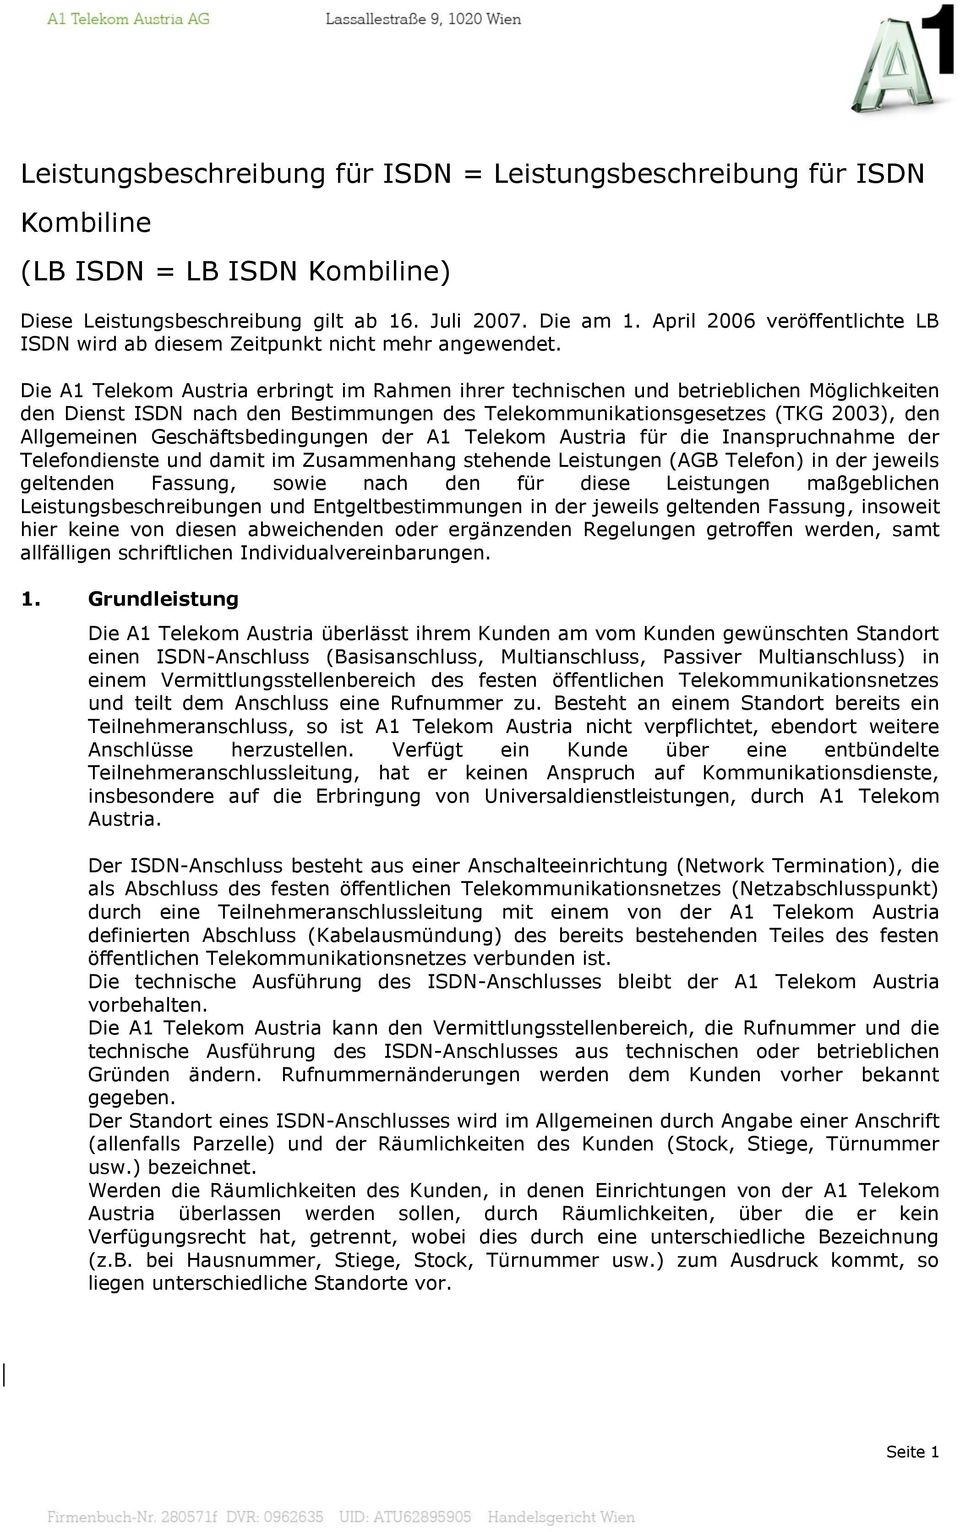 Die A1 Telekom Austria erbringt im Rahmen ihrer technischen und betrieblichen Möglichkeiten den Dienst ISDN nach den Bestimmungen des Telekommunikationsgesetzes (TKG 2003), den Allgemeinen